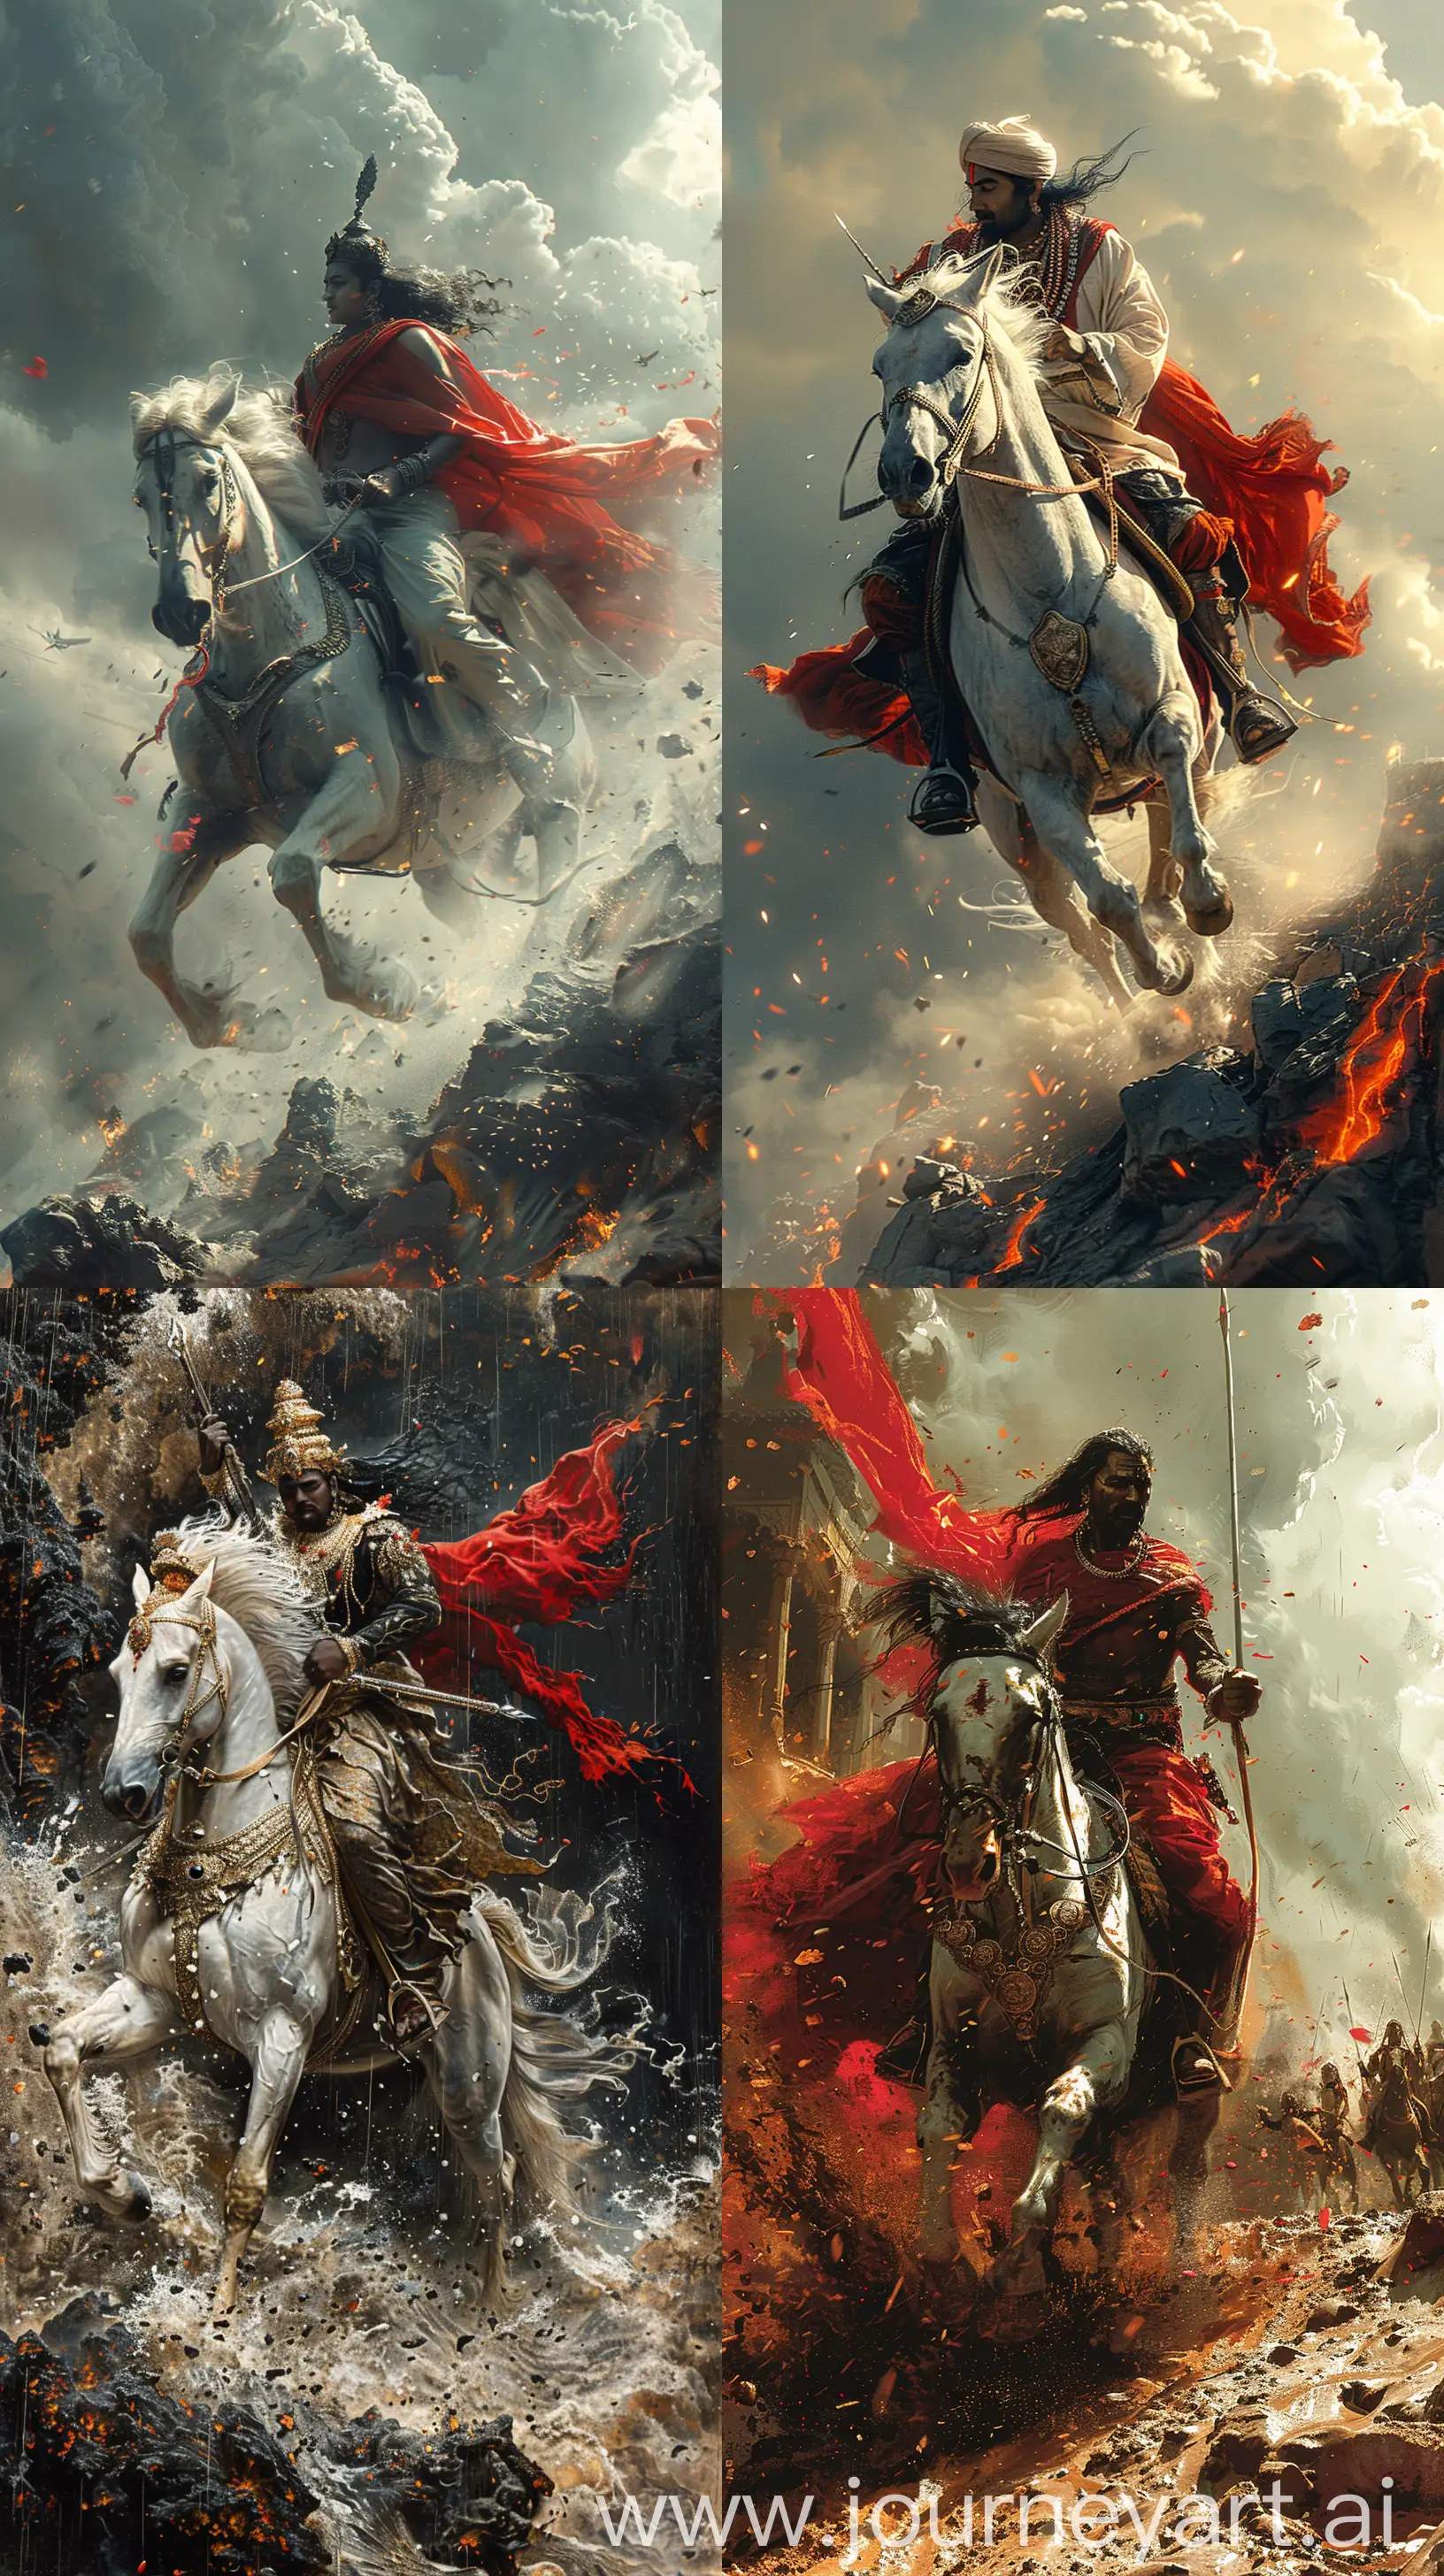 Epic-Battle-of-Lord-Kalki-and-the-Kaliyug-Demon-Kali